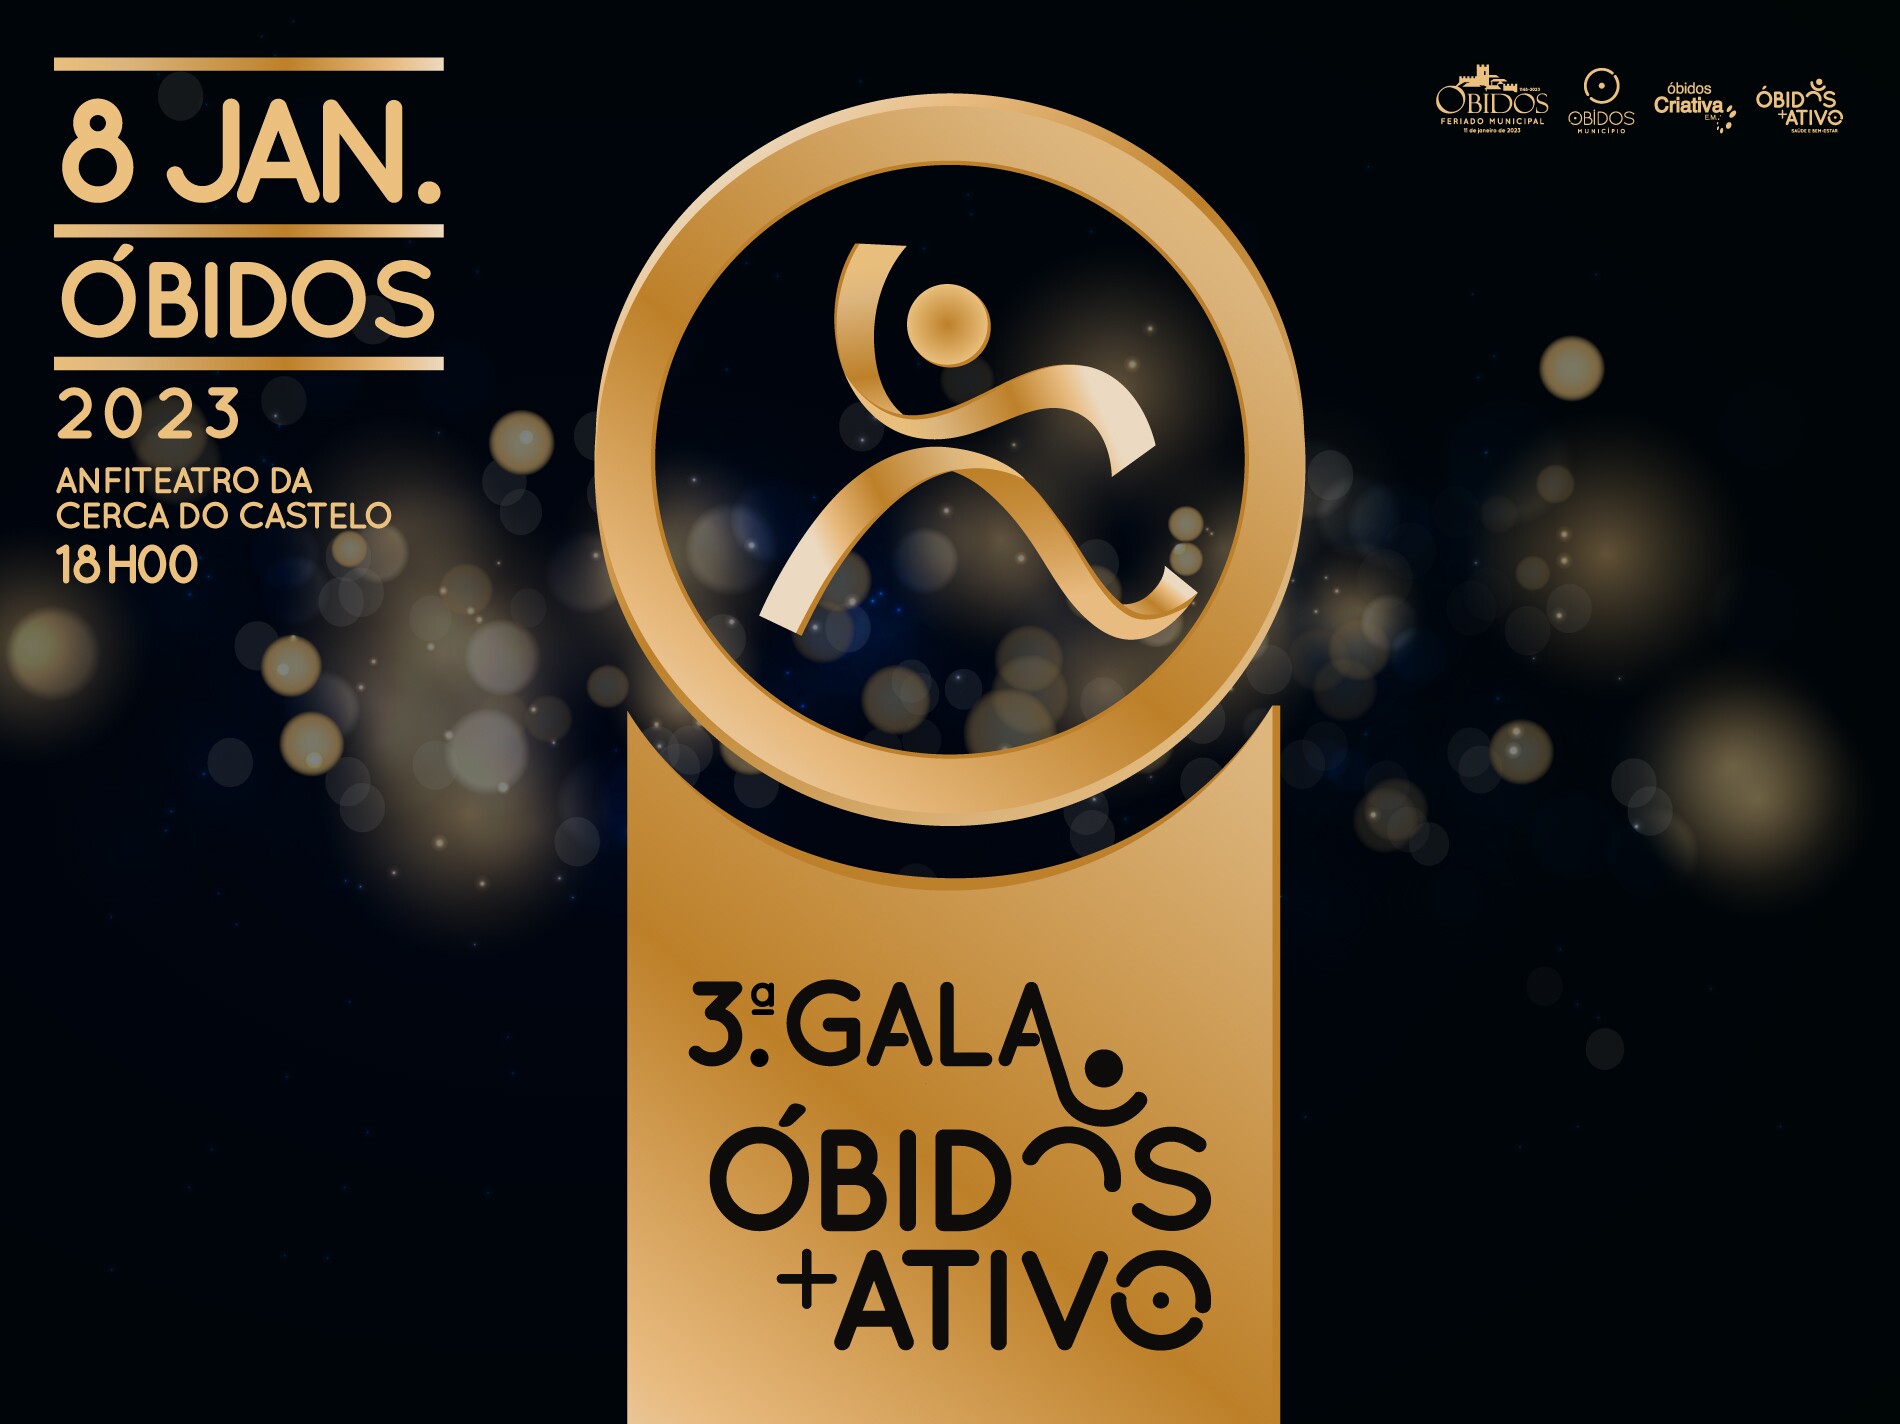 Programa Óbidos + Ativo celebra a sua 3ª Gala